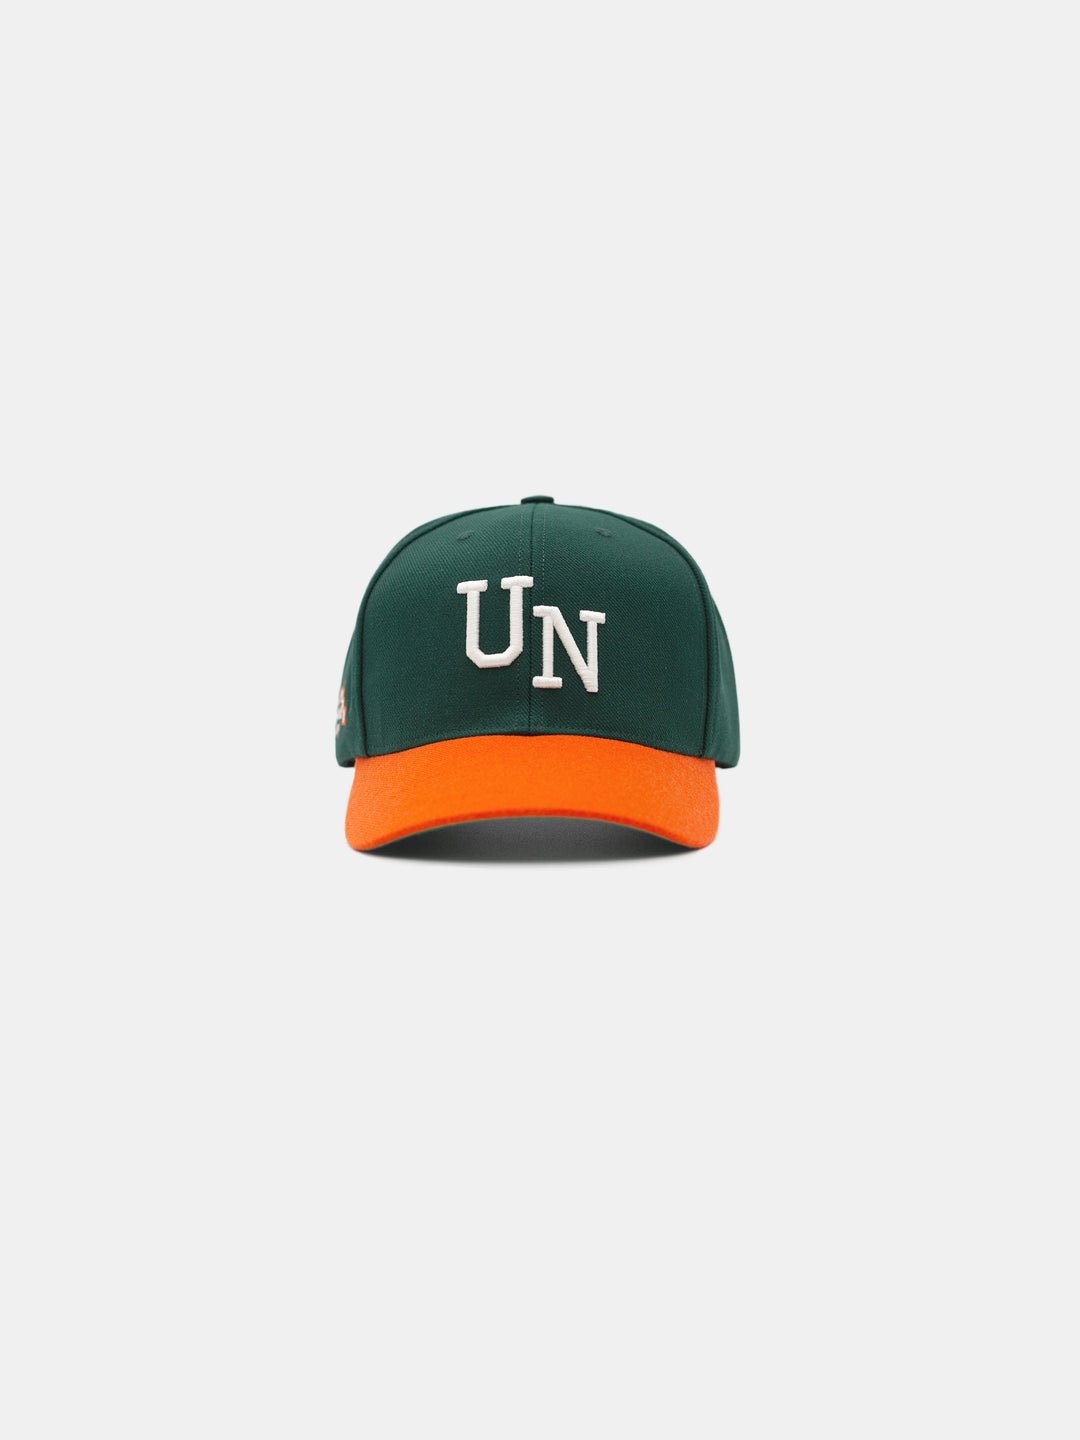 Chosen UN Snapback Hat Green/Orange  UNINTERRUPTED® – Uninterrupted Store